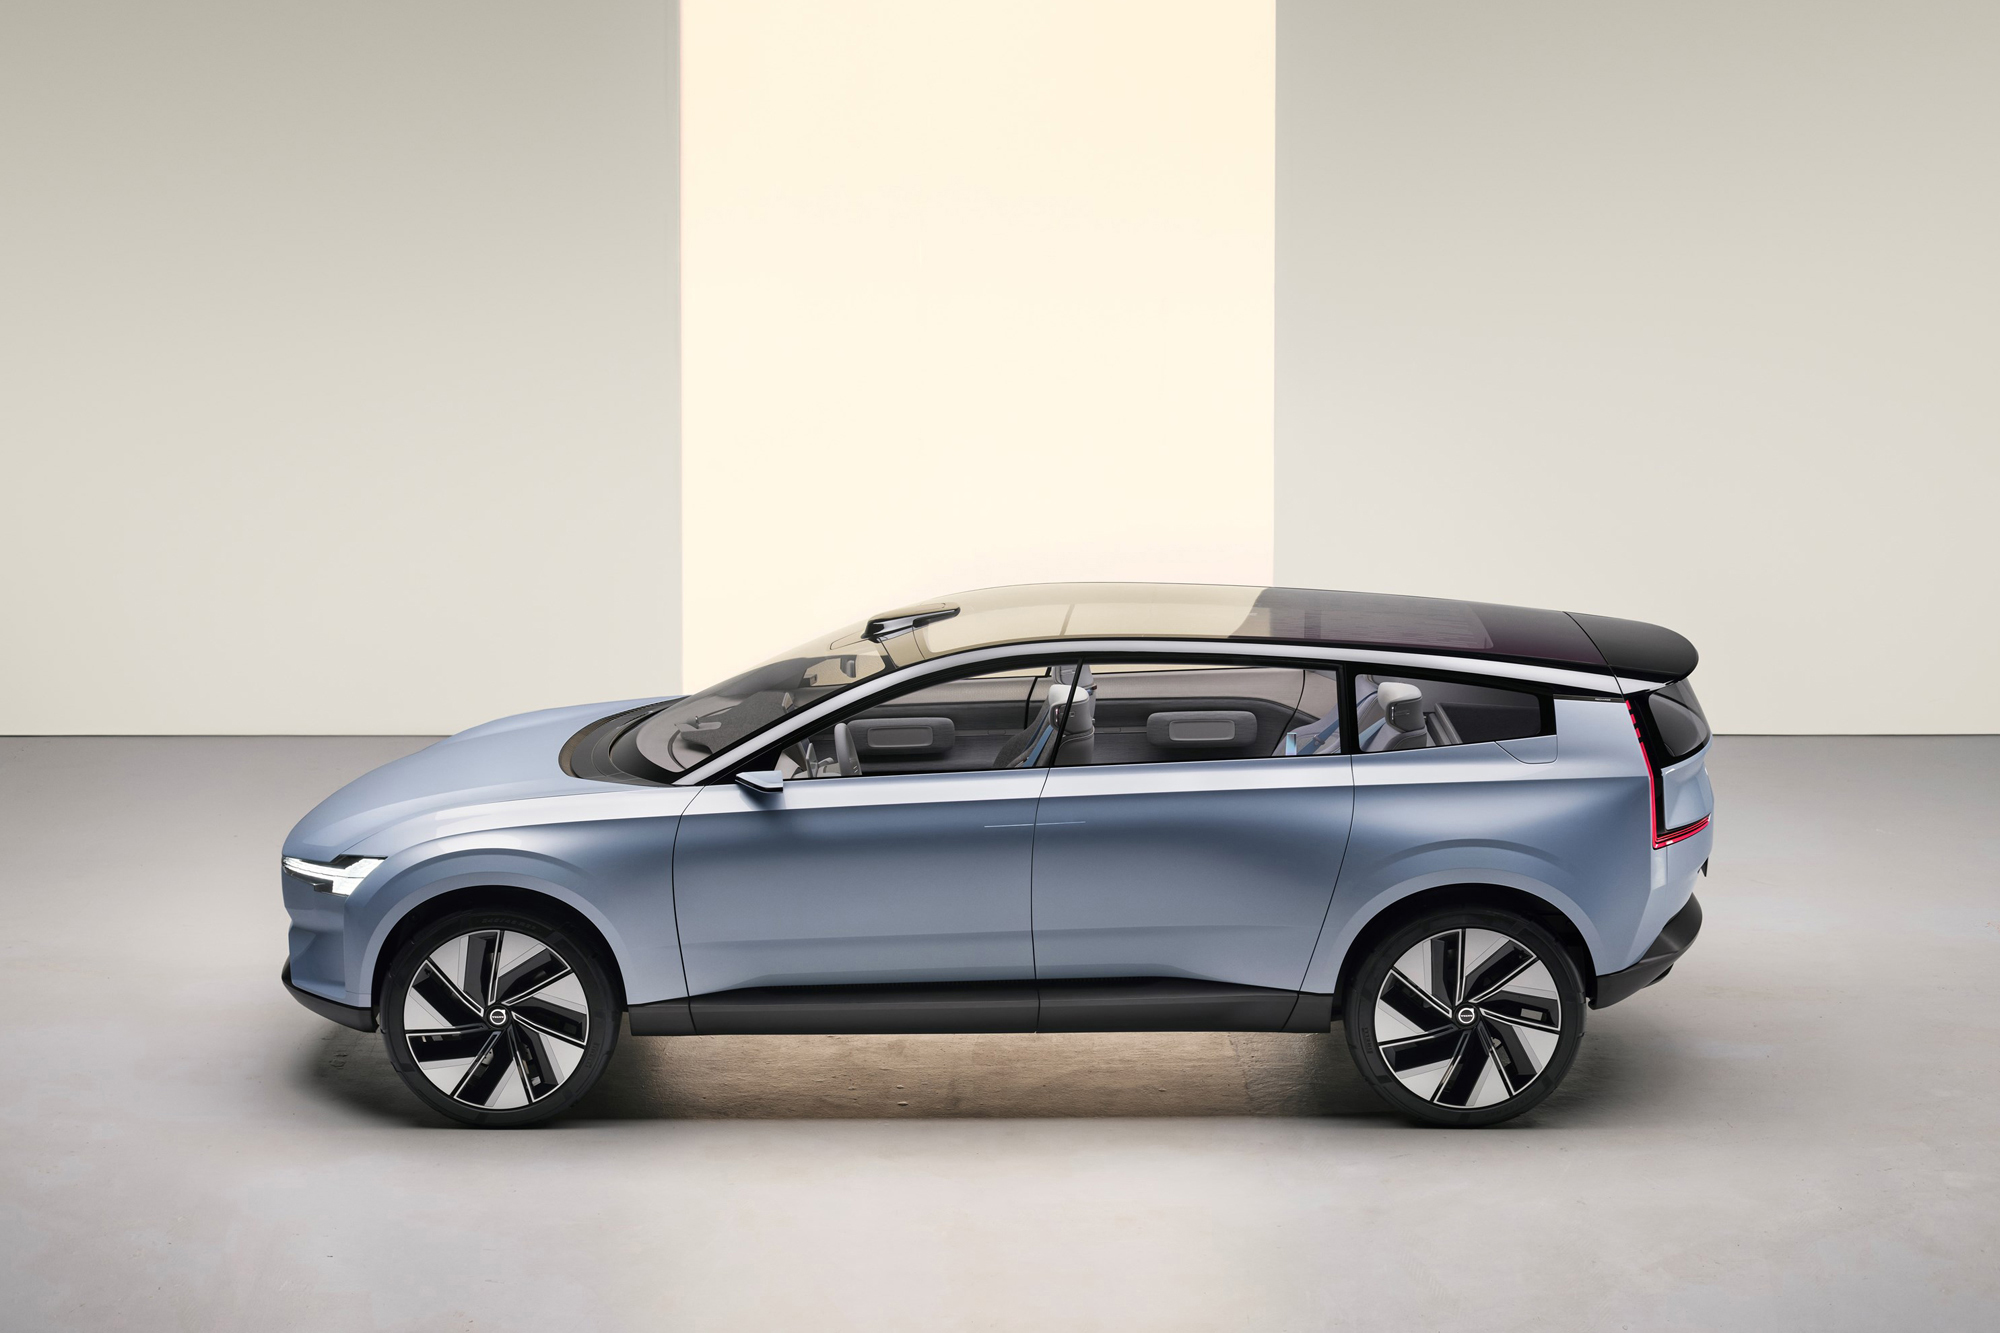 Το Concept Recharge αποτυπώνει την πορεία της Volvo Cars προς τις βιώσιμες μετακινήσεις